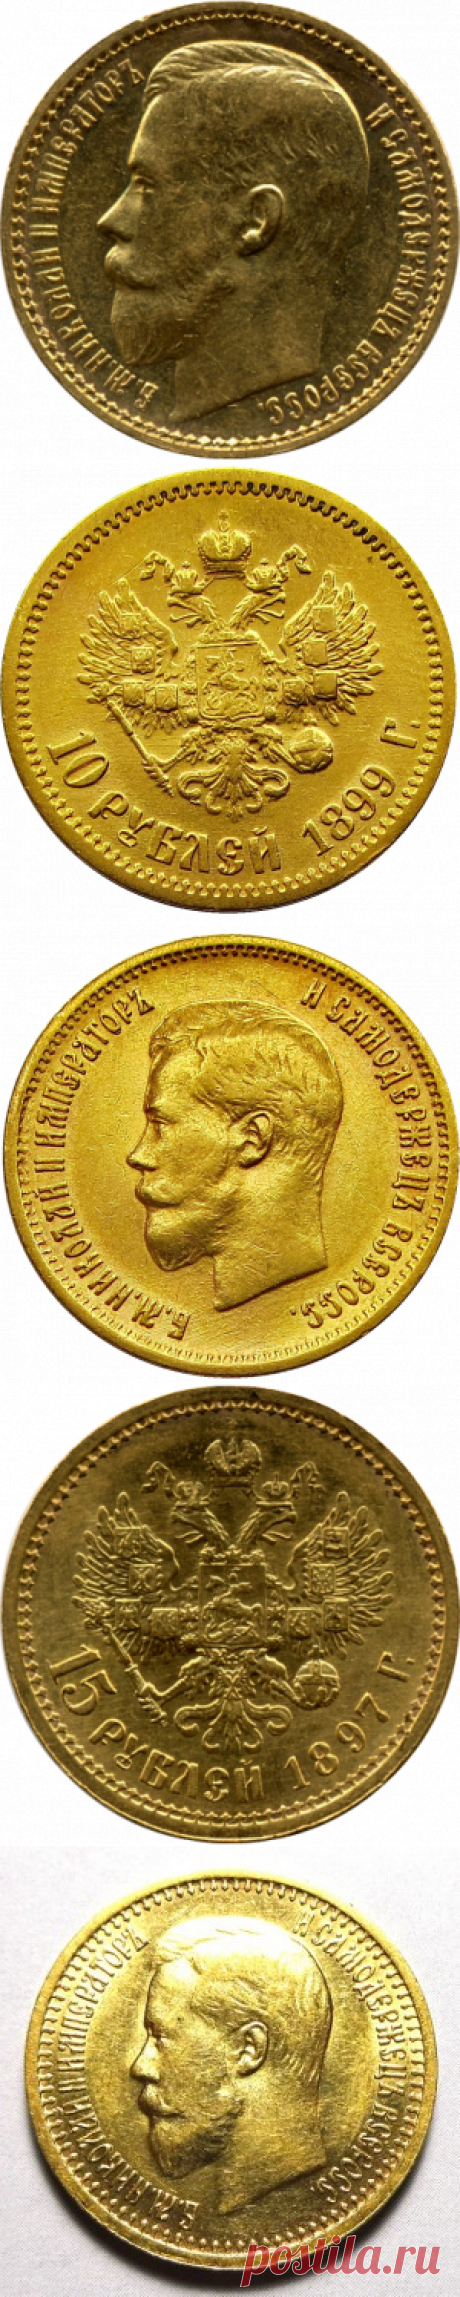 Продать монеты в СПб по выгодной цене в компании Золотой агат. Нам можно продать золотые монеты дорого